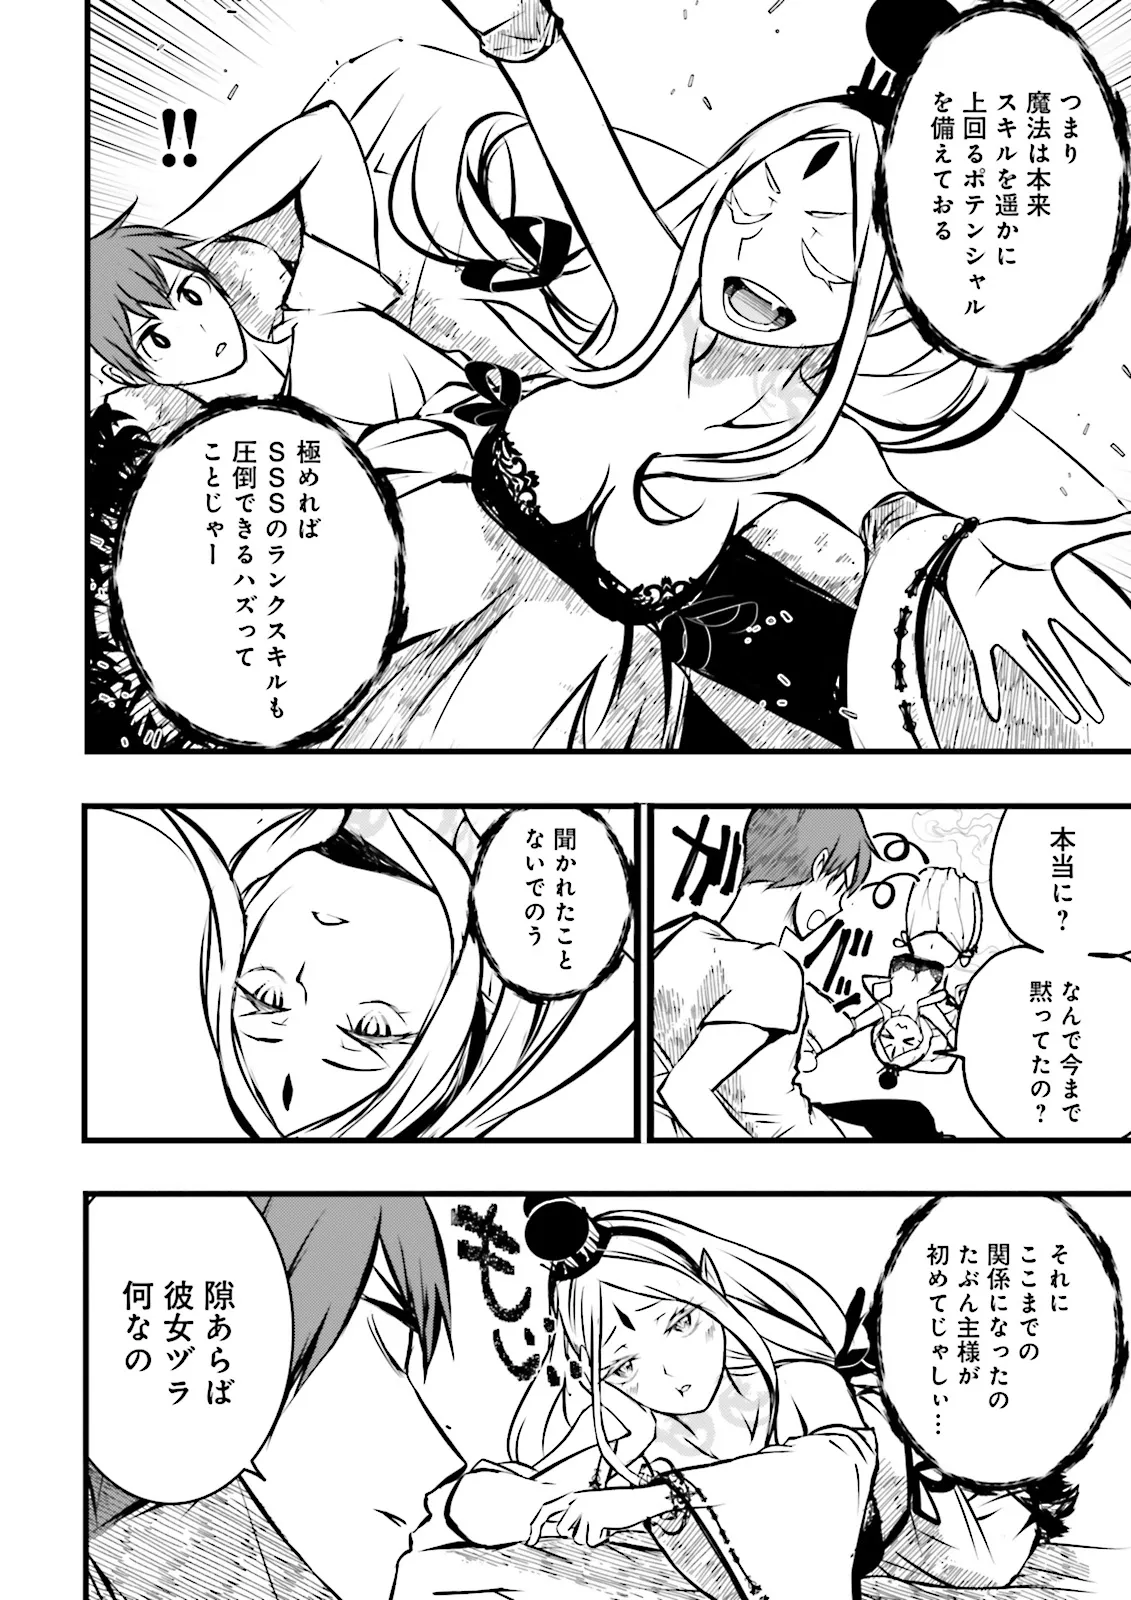 Sukiru Ga Nakereba Level wo Ageru ~ 99 Ga Kansuto No Sekai De Reberu 800 Man Kara Sutato ~ - Chapter 38.2 - Page 10